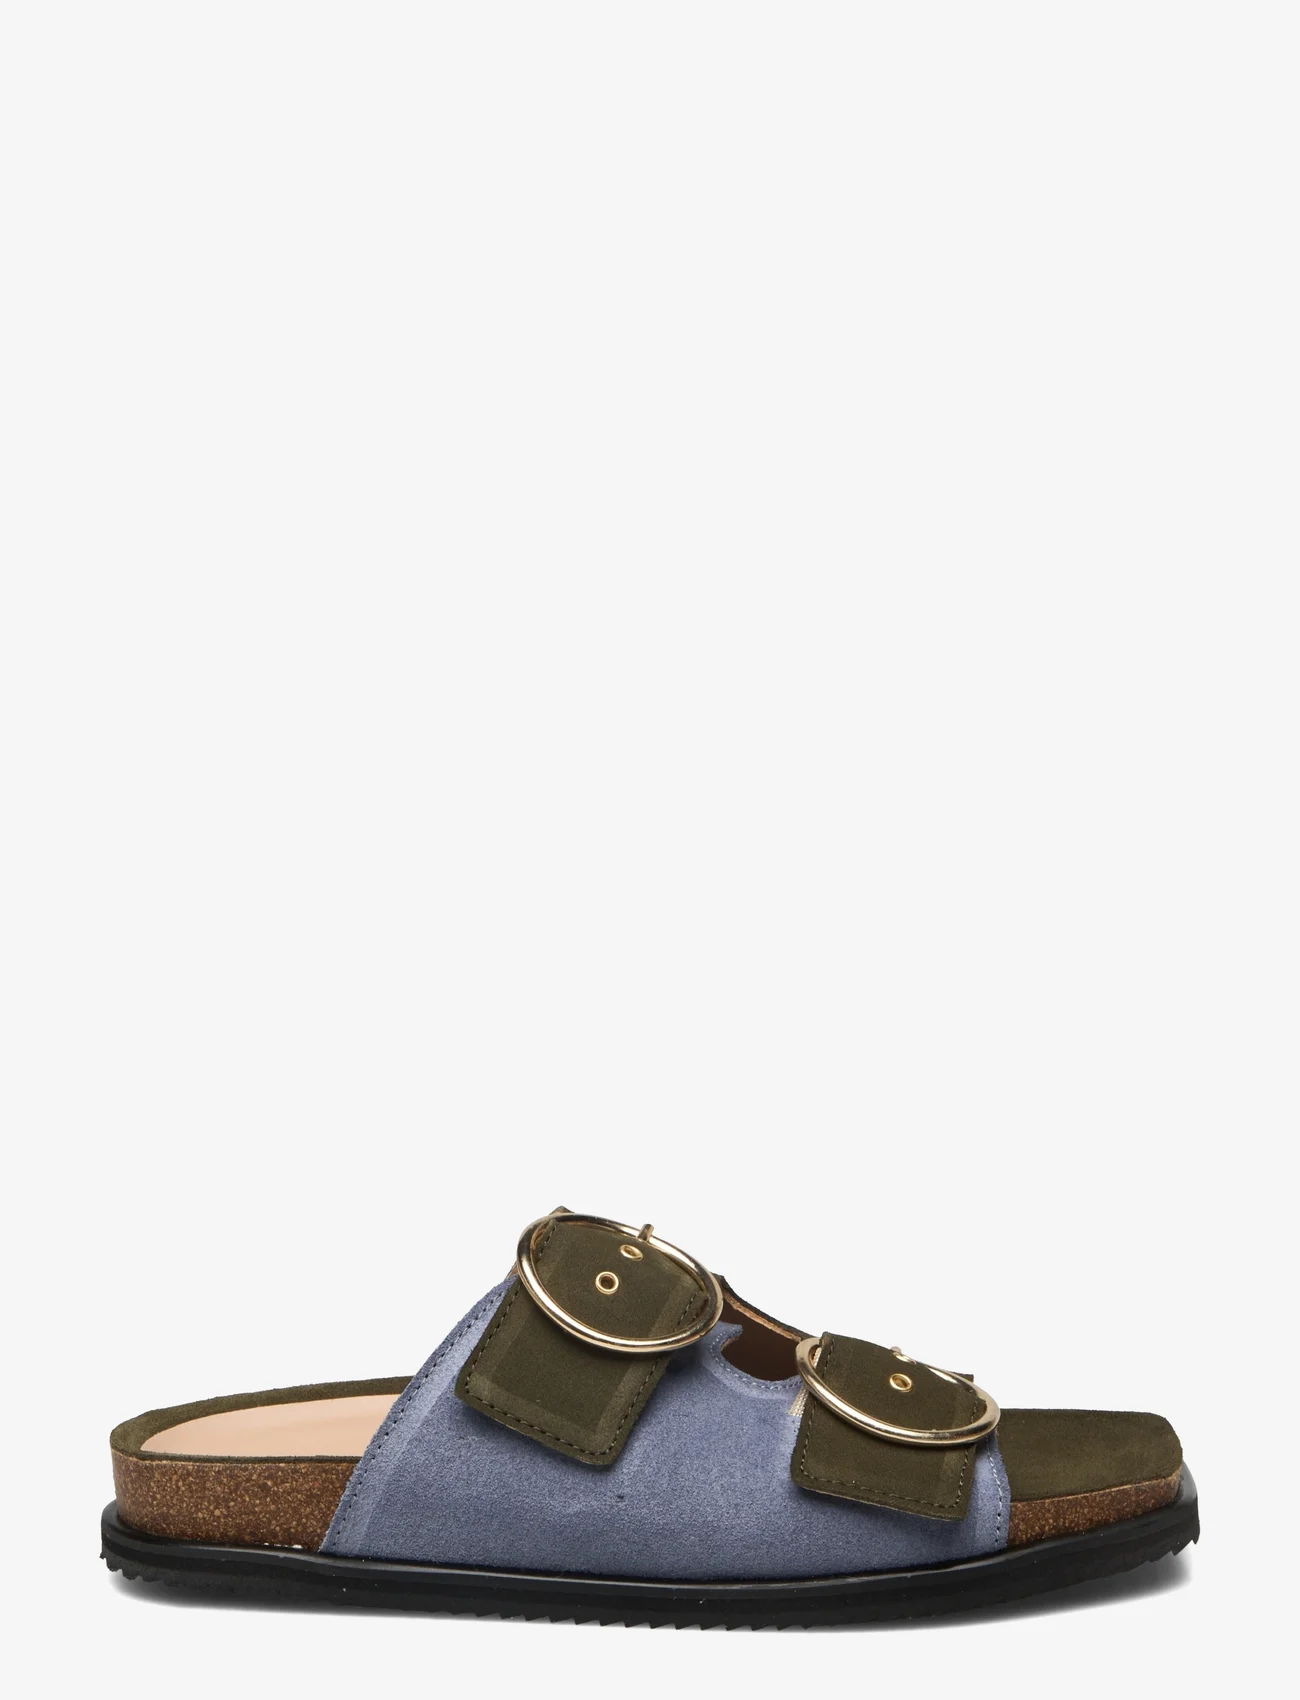 ANGULUS - Sandals - flat - open toe - op - platta sandaler - 2244/2242 light blue/green - 1